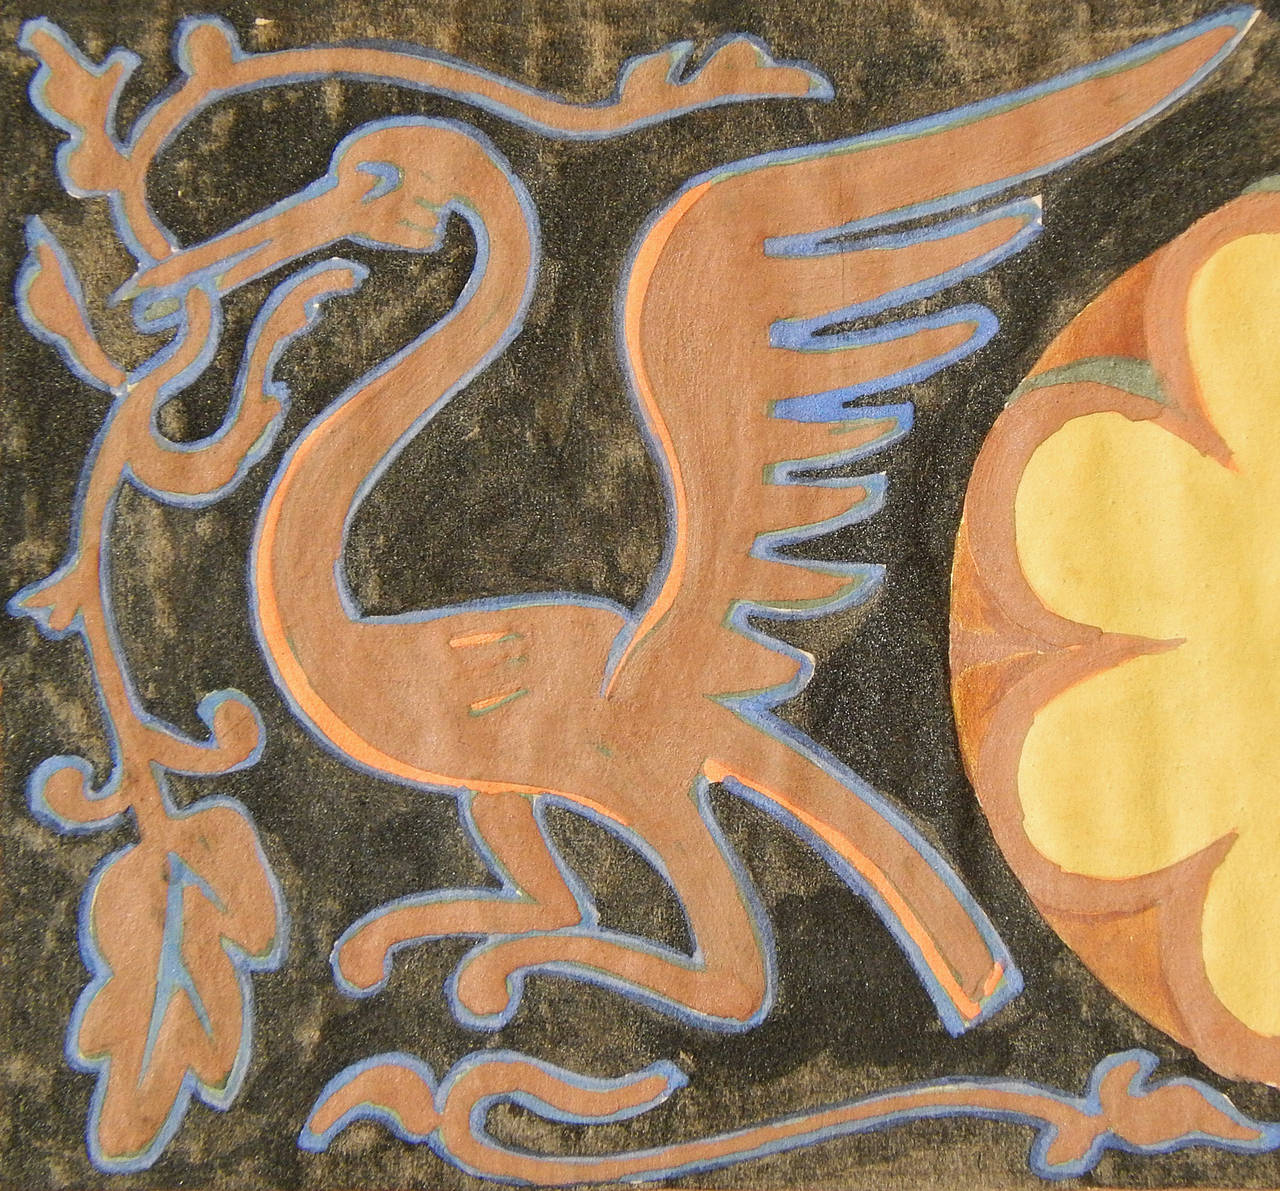 Superbe exemple de peinture décorative Art déco influencée par des motifs médiévaux, ce tableau de frise du célèbre muraliste Dunbar Beck est saturé de couleurs profondes et magnifiques. Chacun des deux oiseaux exotiques est imprégné de terre de